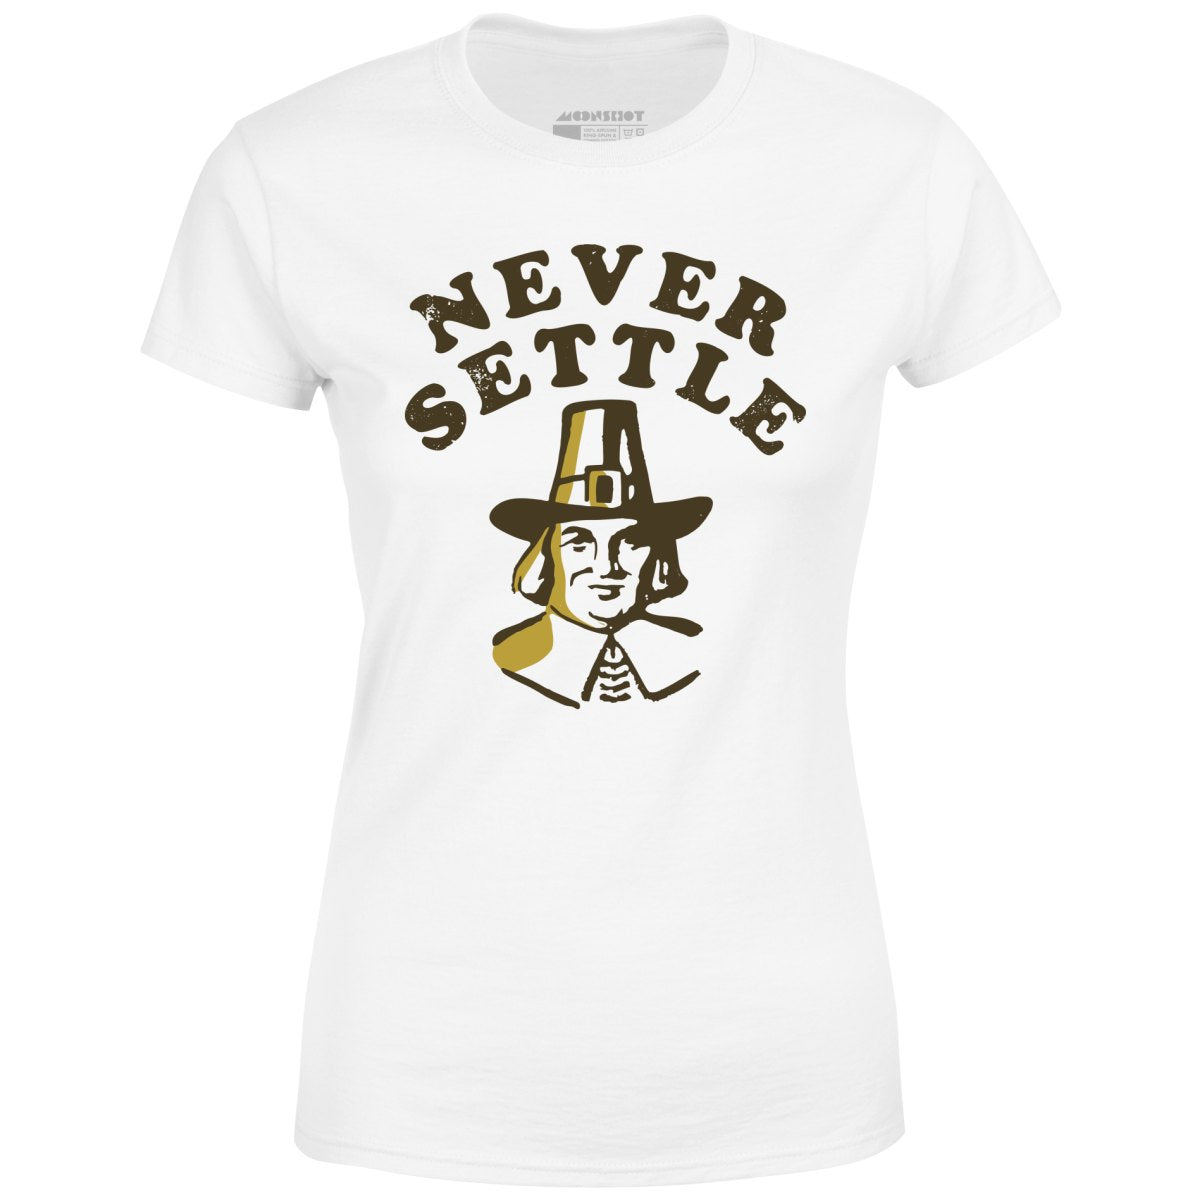 Never Settle - Women's T-Shirt